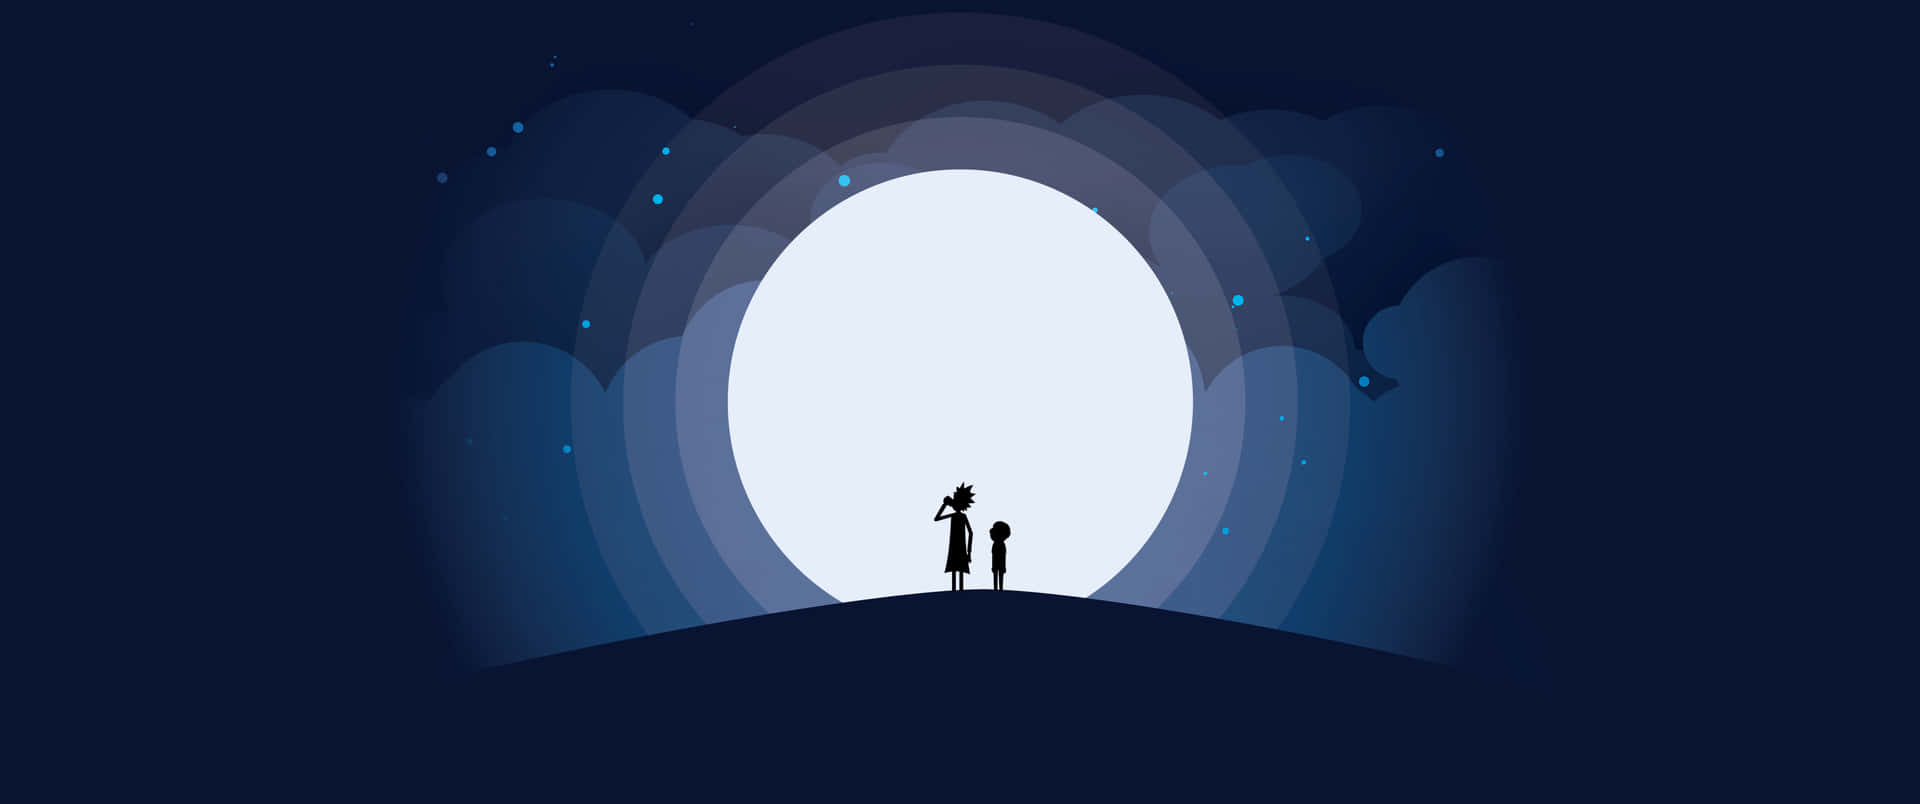 En mand og kvinde står på en bakke med et lys, der skinner igennem himlen Wallpaper